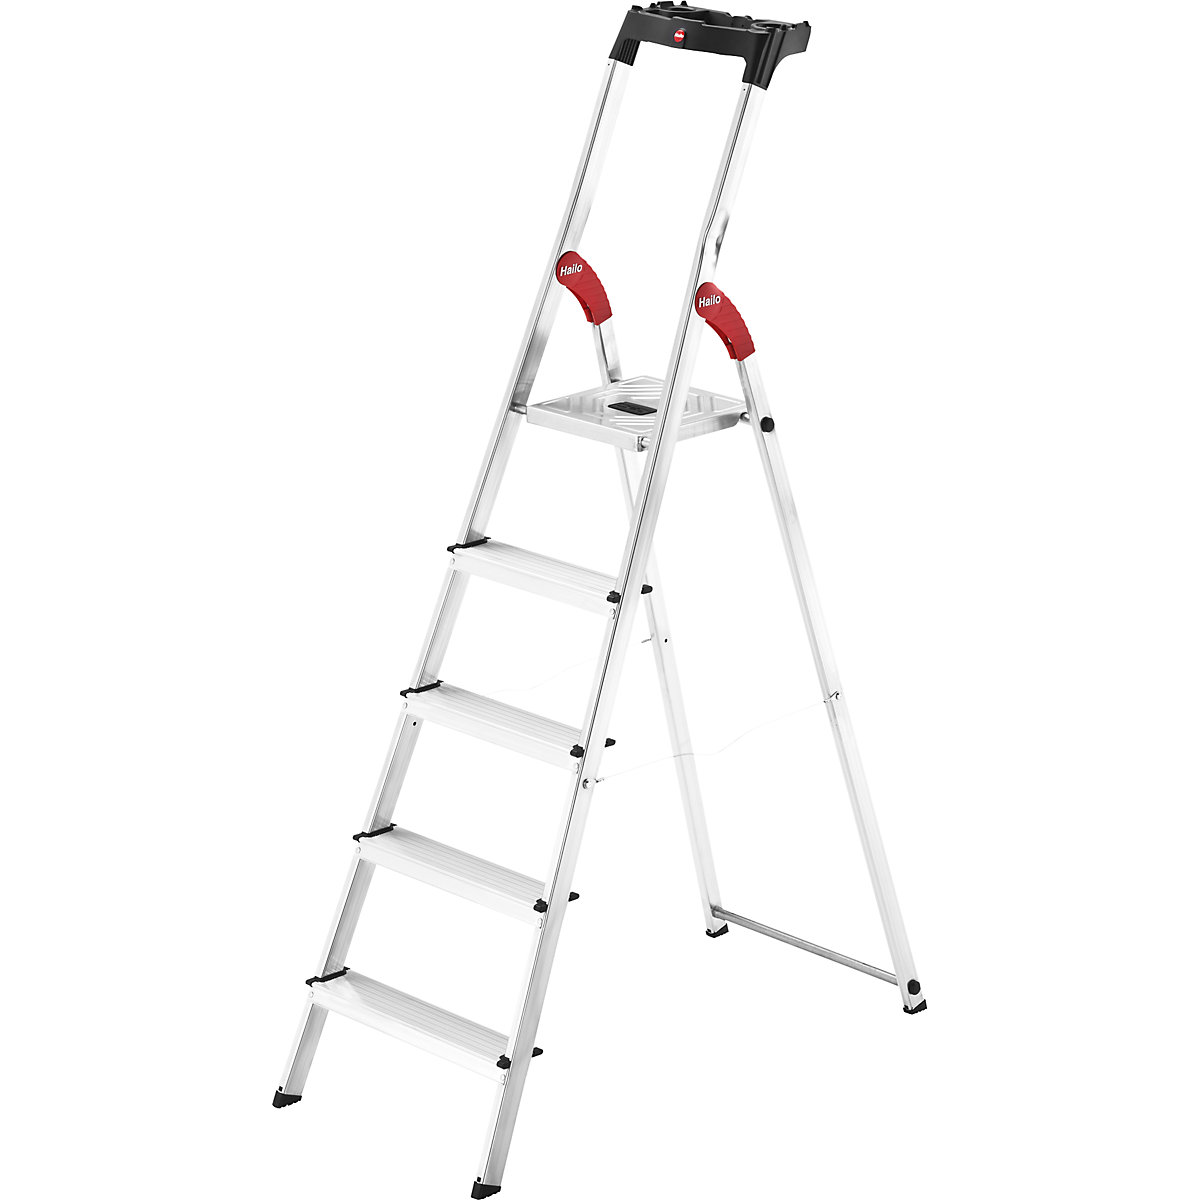 Hliníkový stojací rebrík so stupňami StandardLine L60 – Hailo, nosnosť 150 kg, 5 stupňov-11